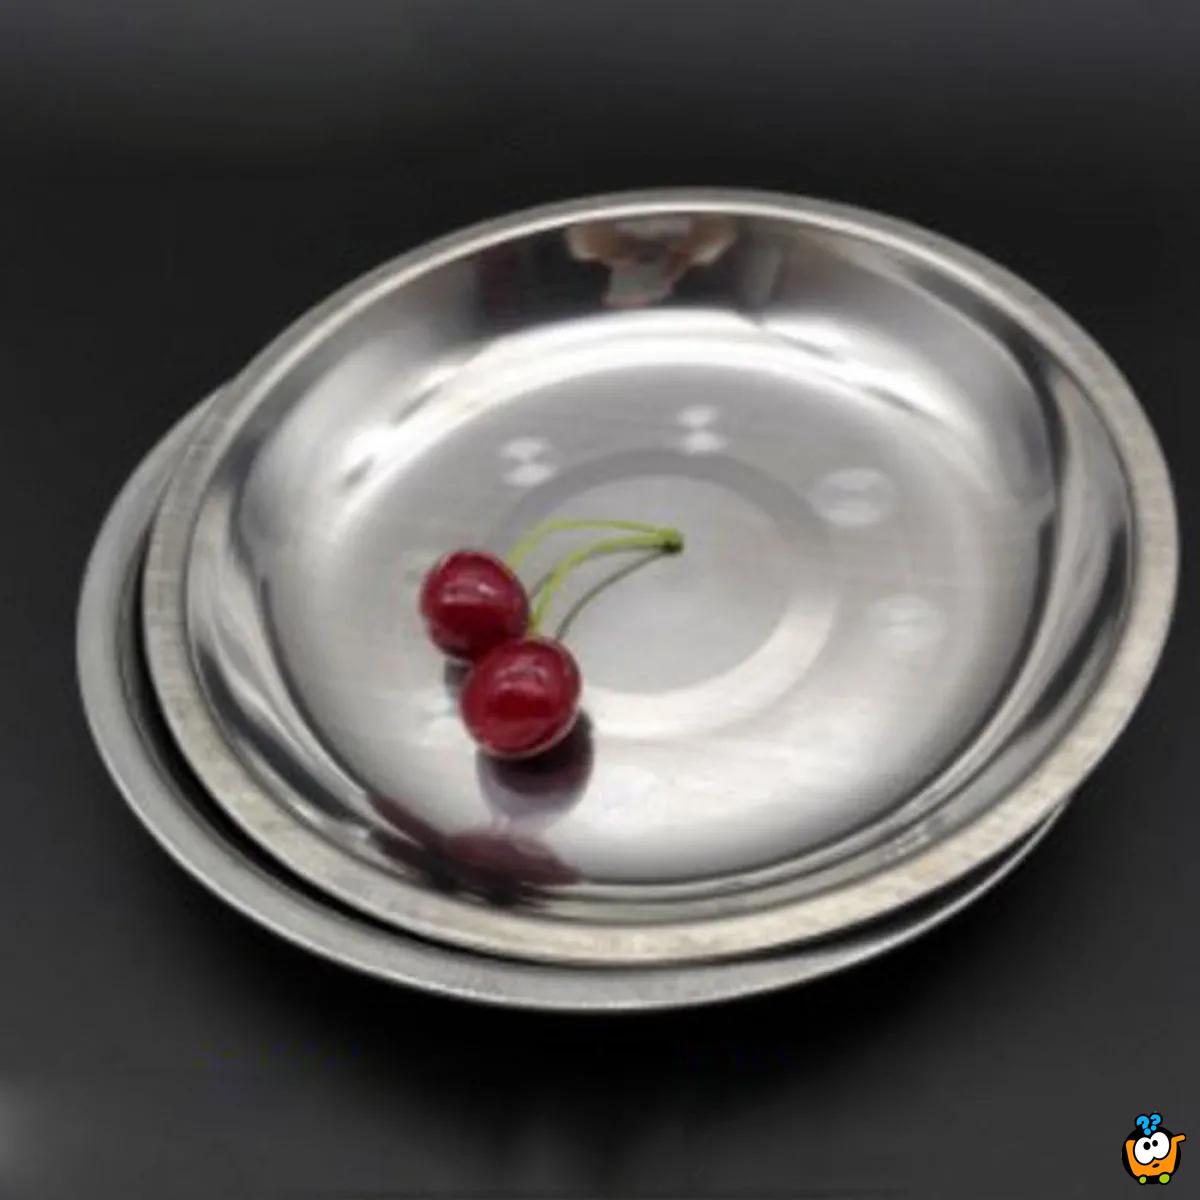 Oval Plate - Okrugli tanjir od nerđajućeg čelika